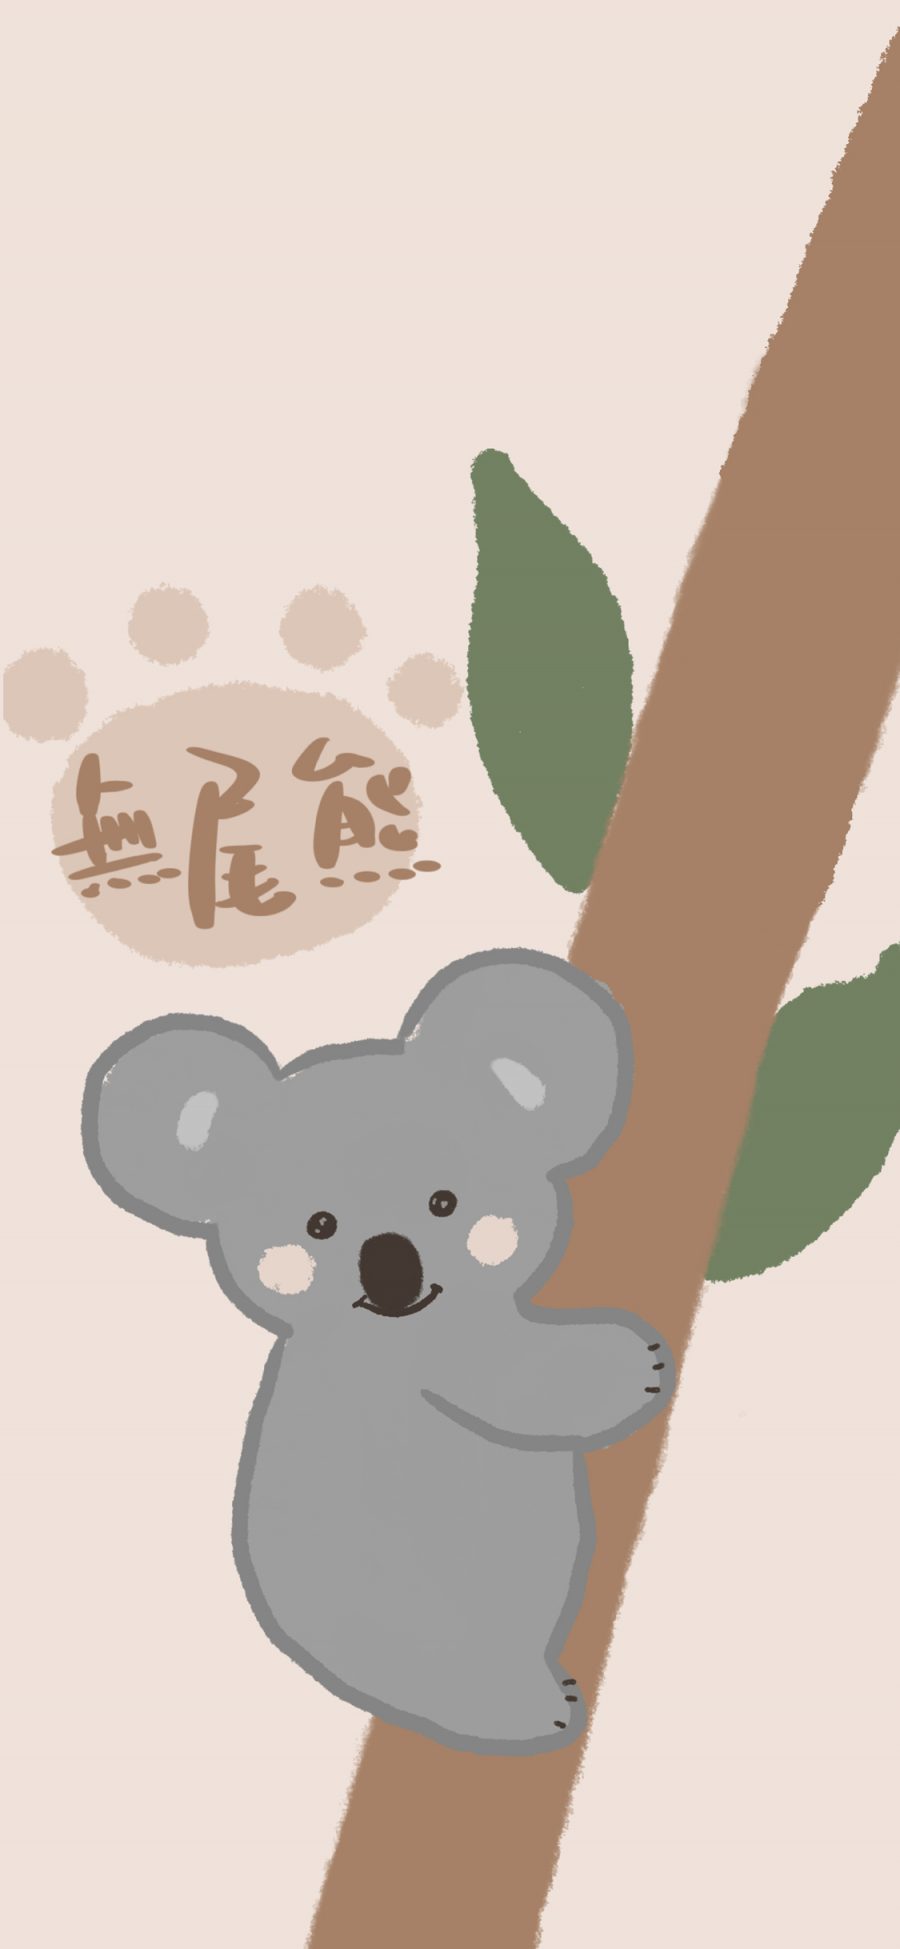 [2436×1125]绘画 可爱 树袋熊 考拉 苹果手机动漫壁纸图片